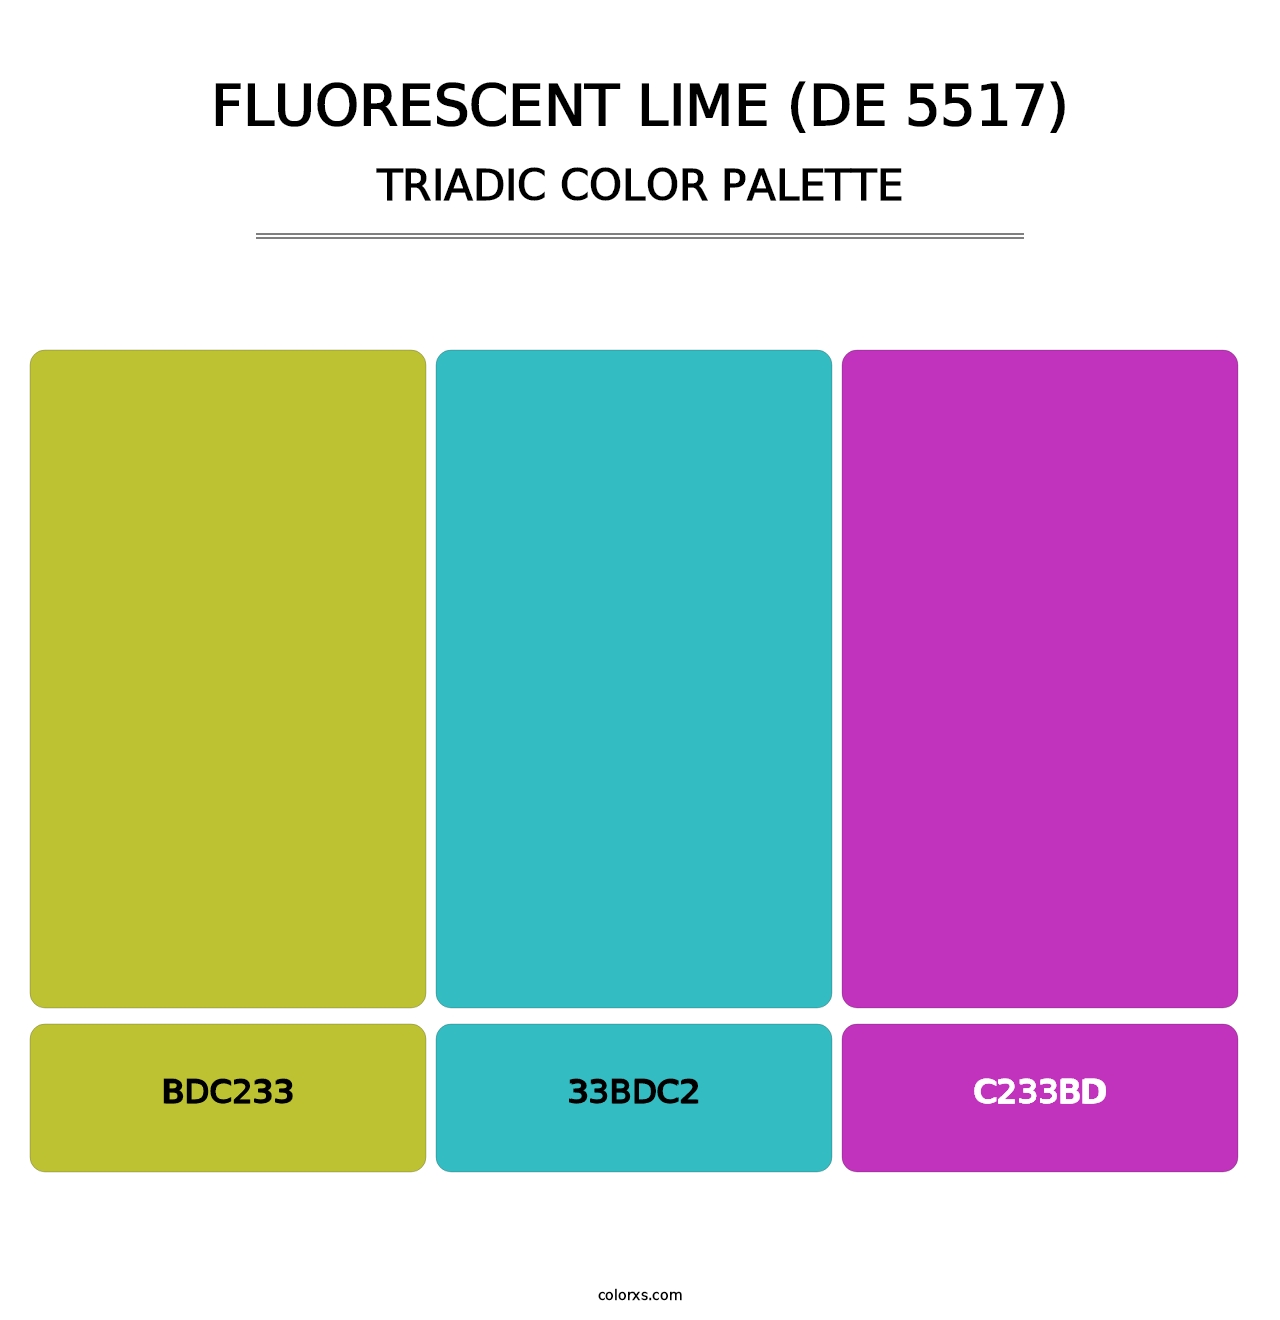 Fluorescent Lime (DE 5517) - Triadic Color Palette